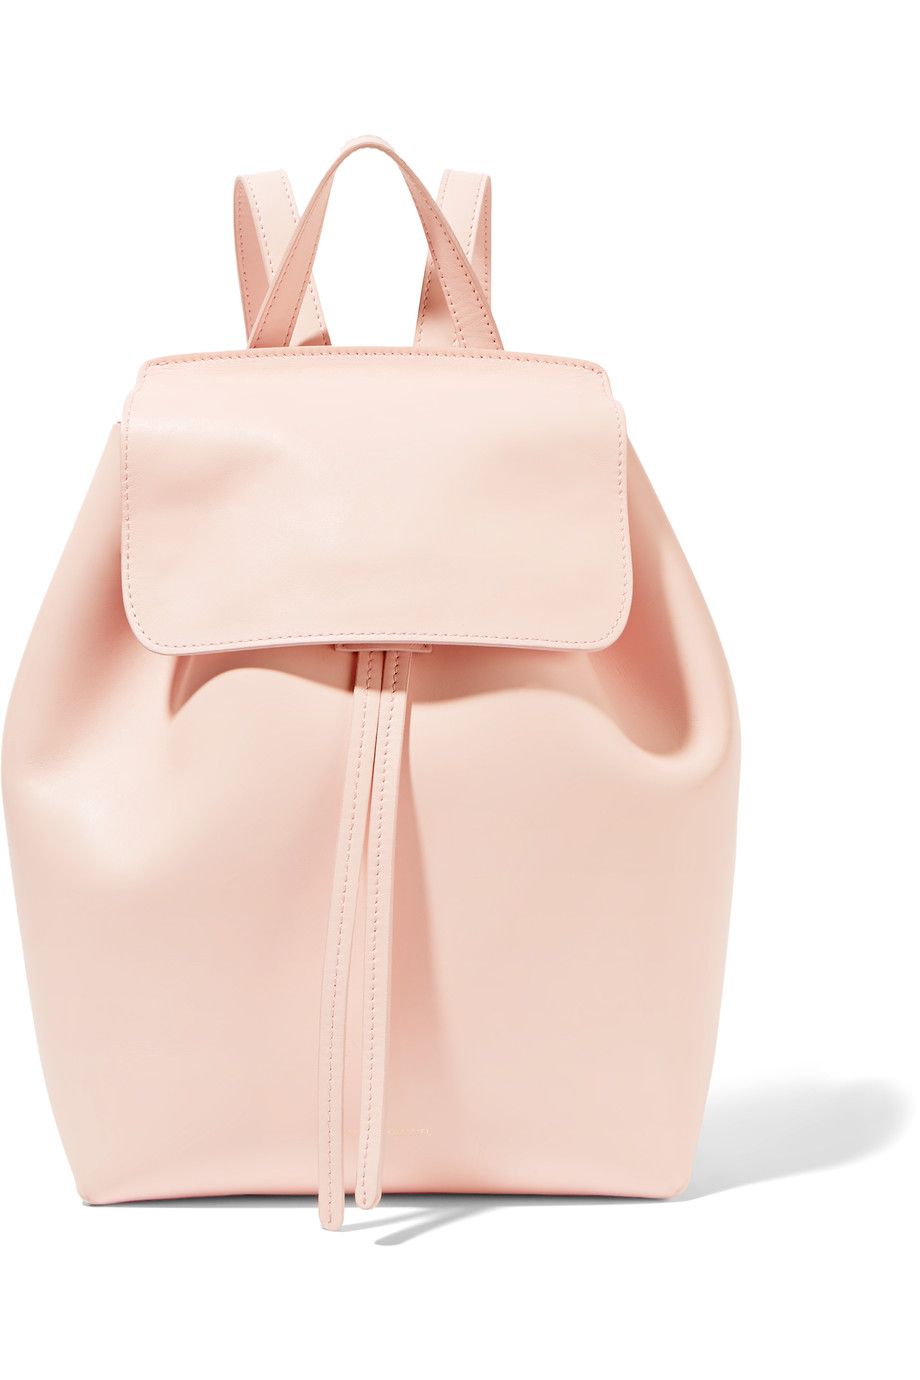 Bag, Pink, Handbag, Shoulder, Fashion accessory, Beige, Footwear, Peach, Shoulder bag, Leather, 